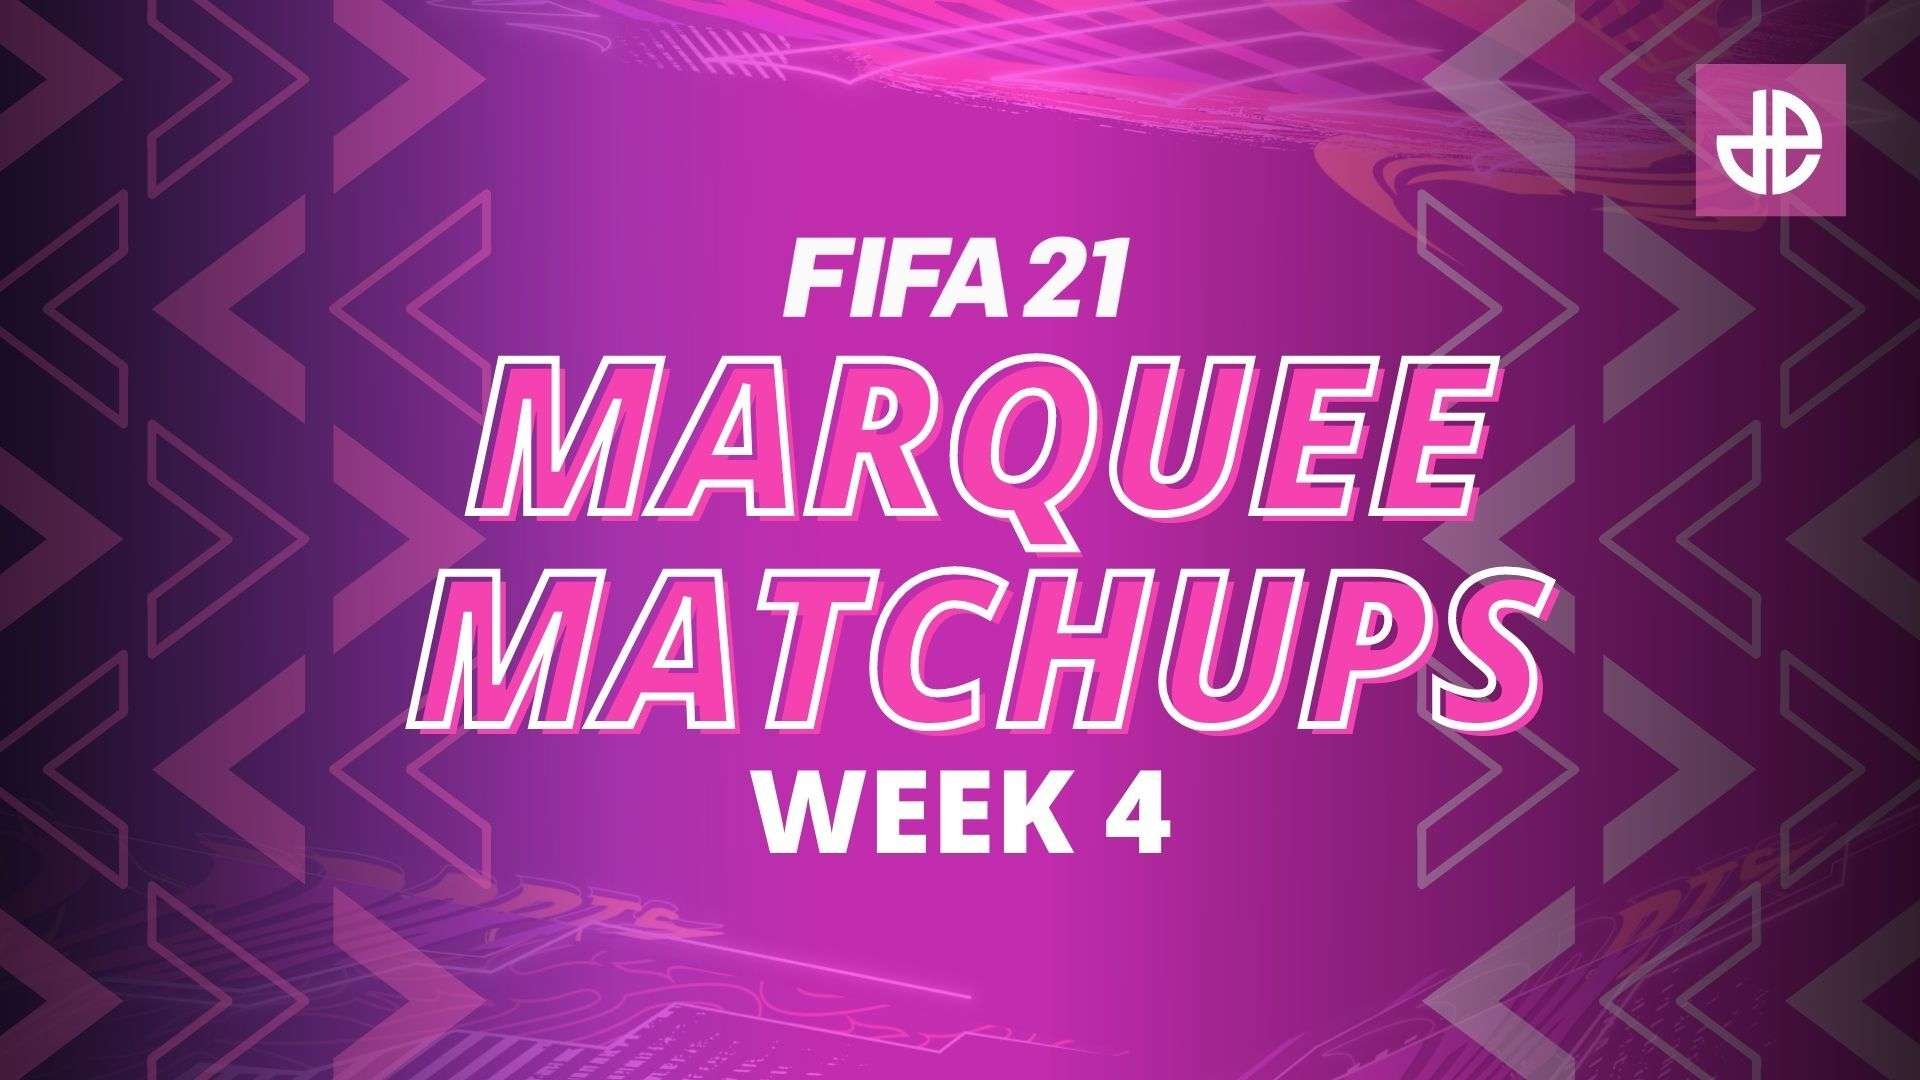 Marquee Matchups Week 4